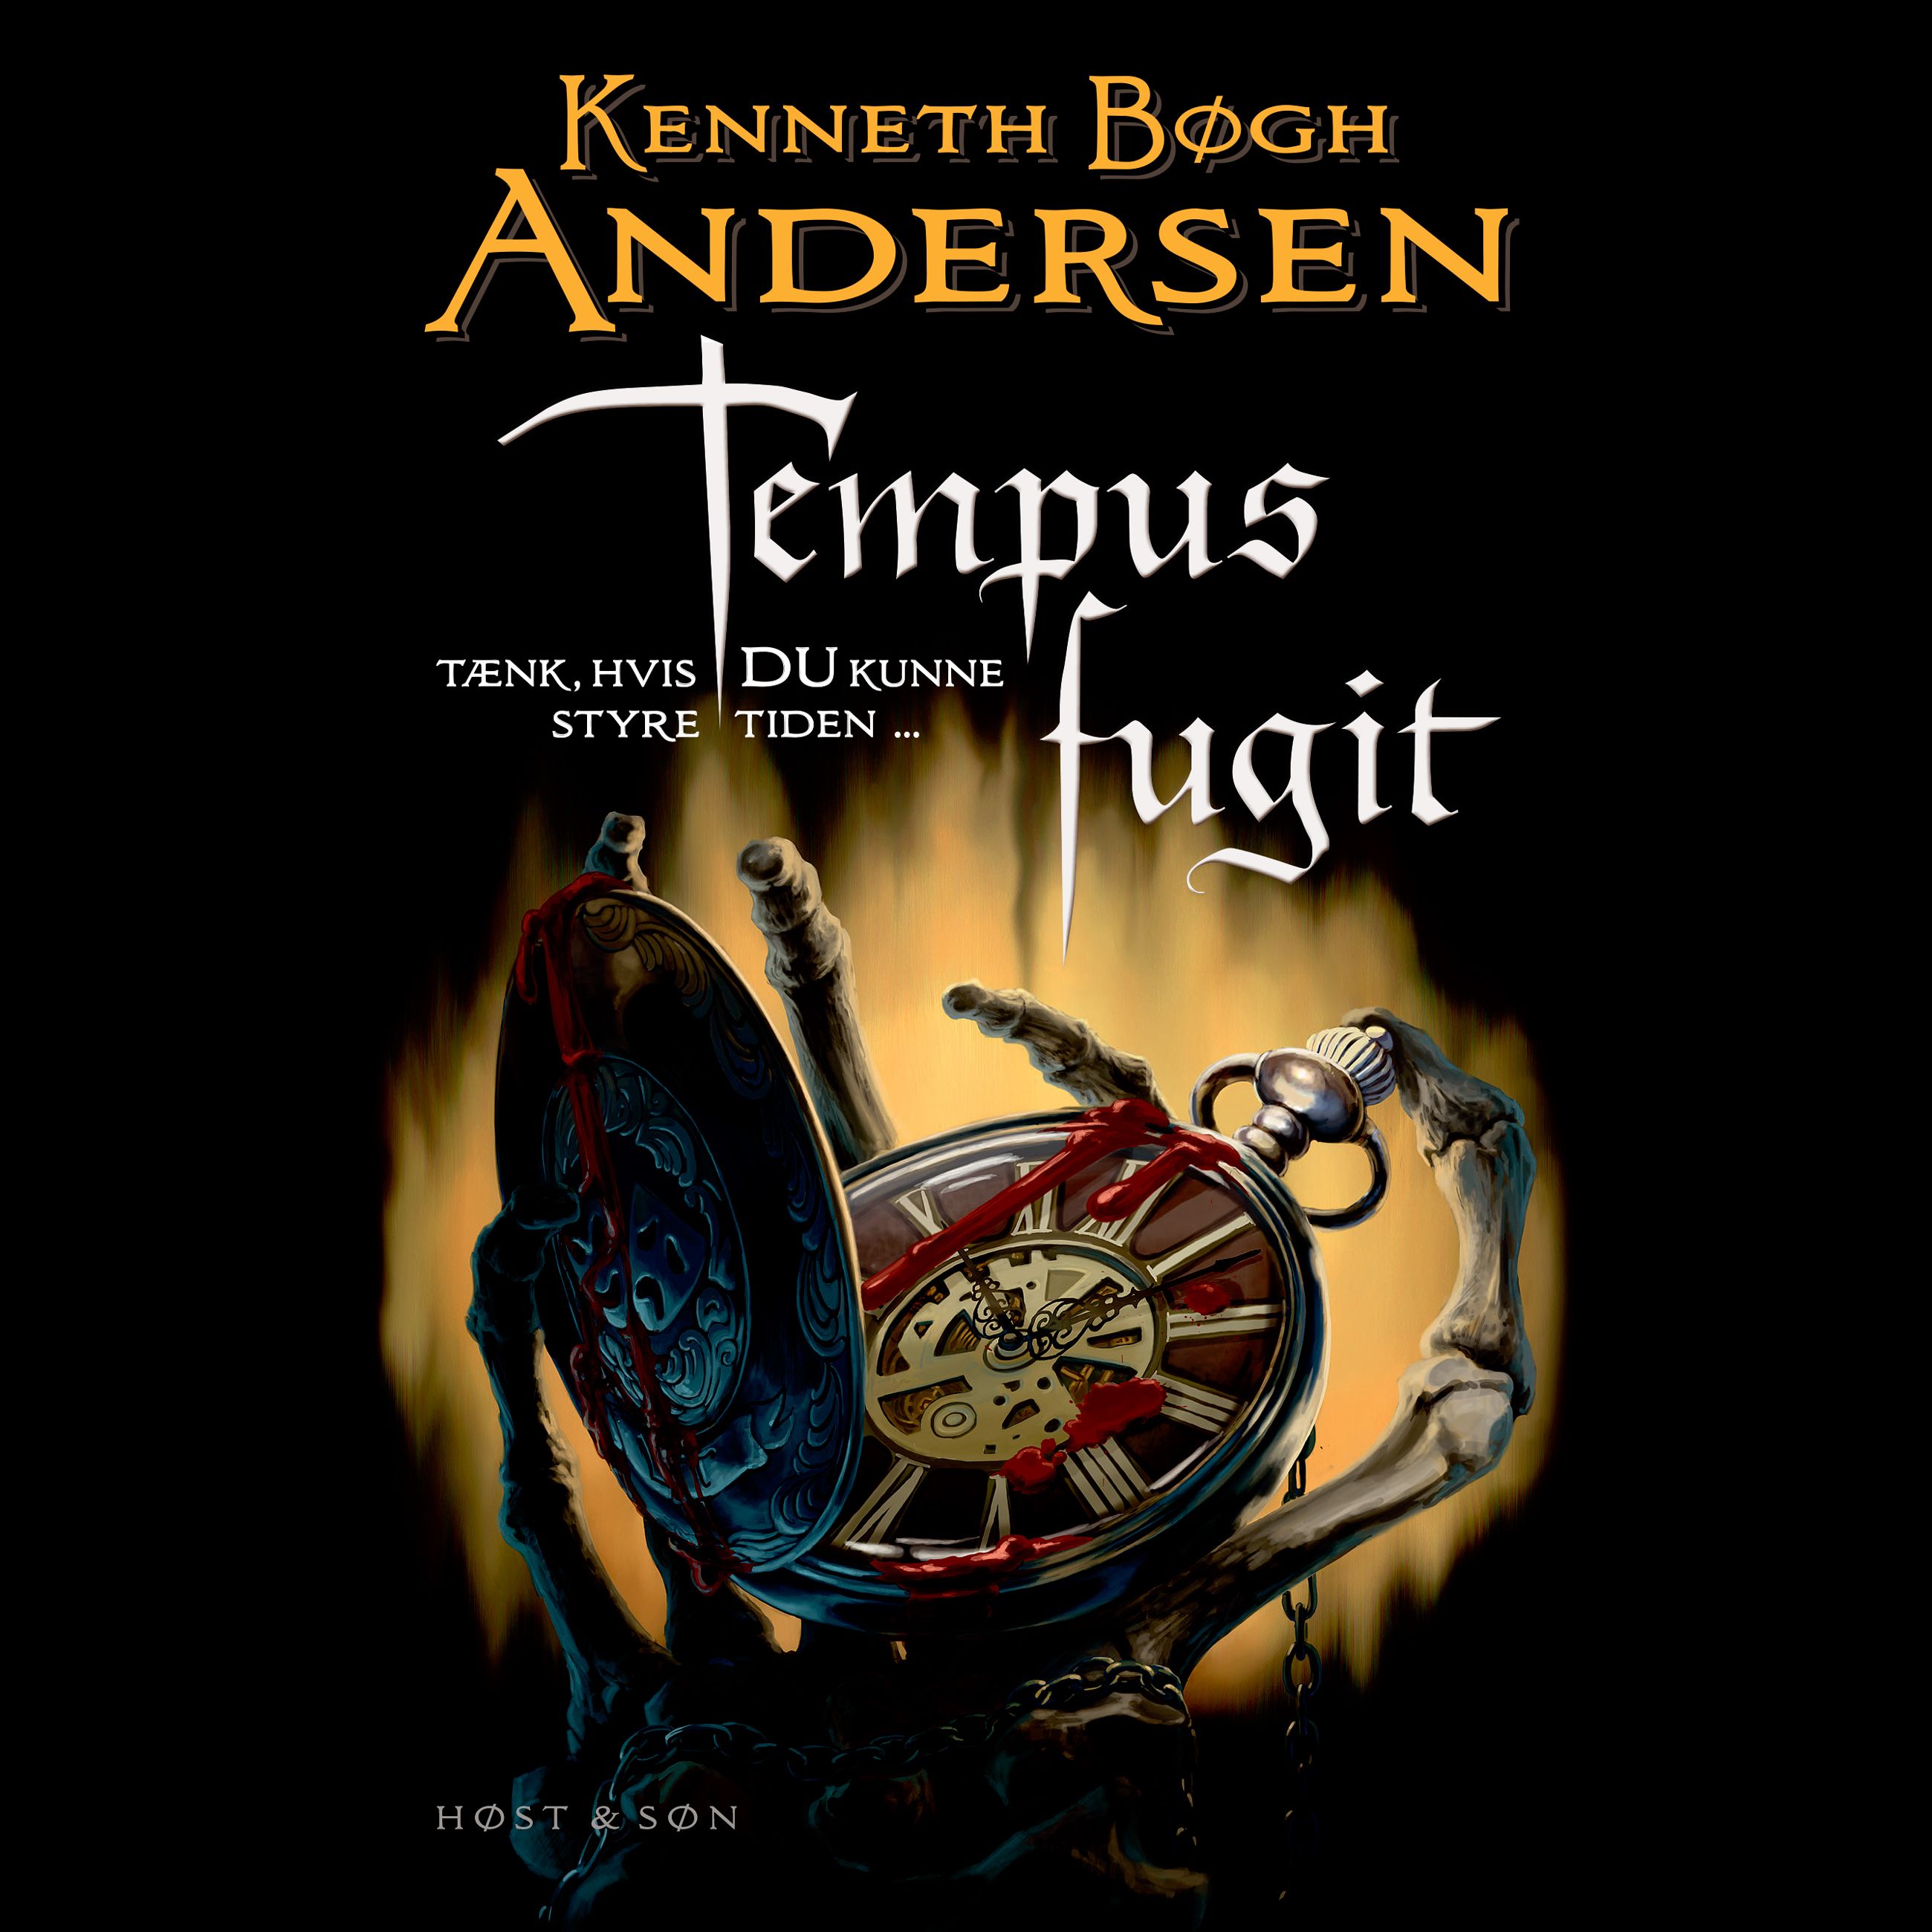 Tempus fugit, lydbog af Kenneth Bøgh Andersen